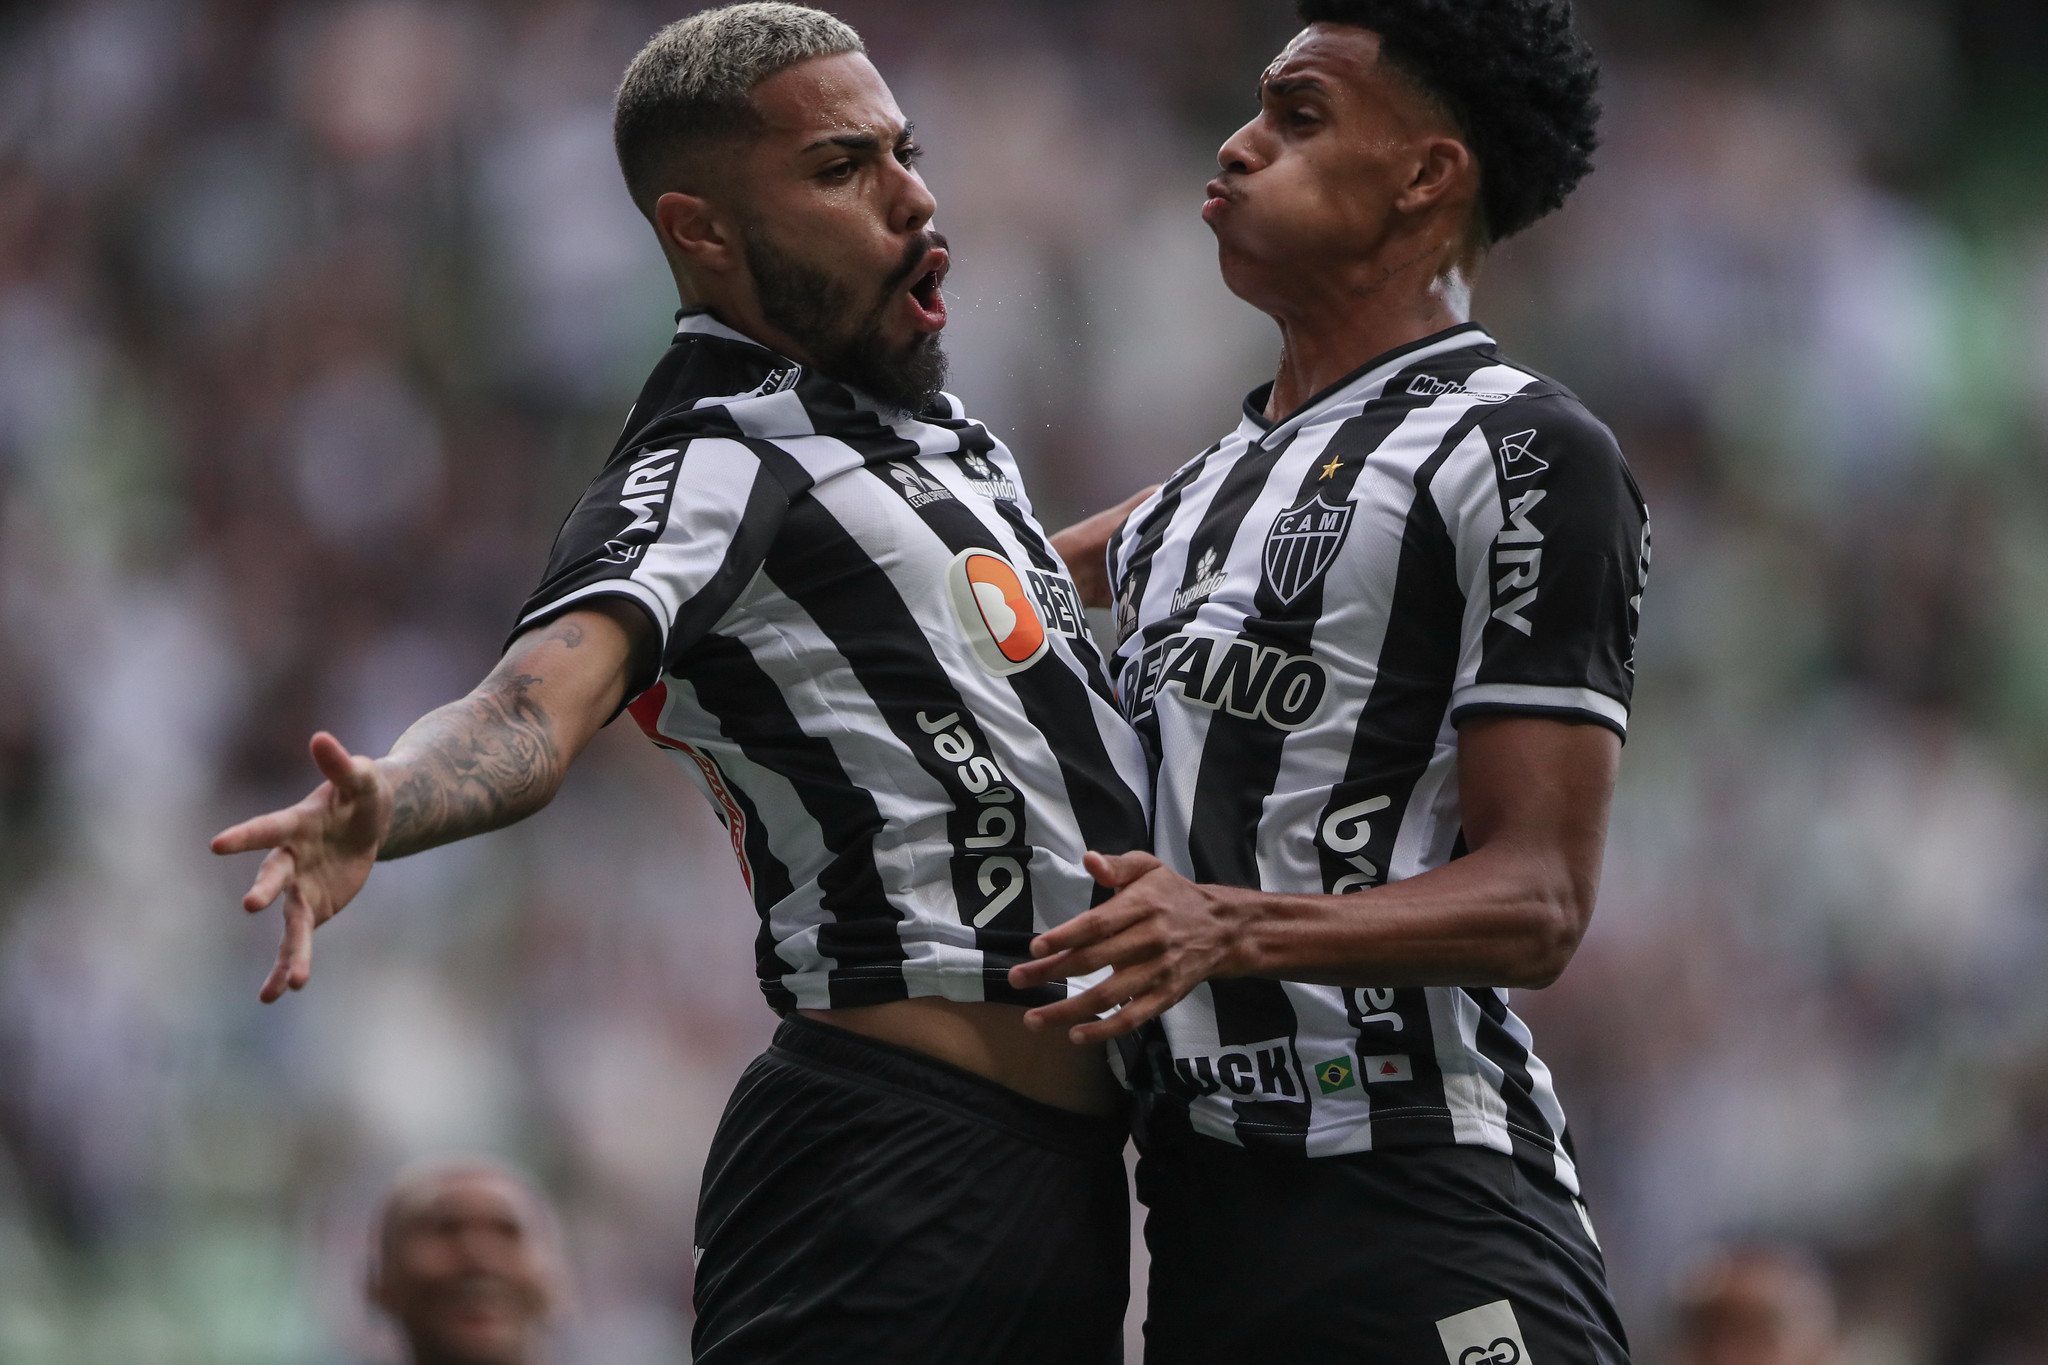 Calebe y Borrero celebrando el gol / Foto: Pedro Souza